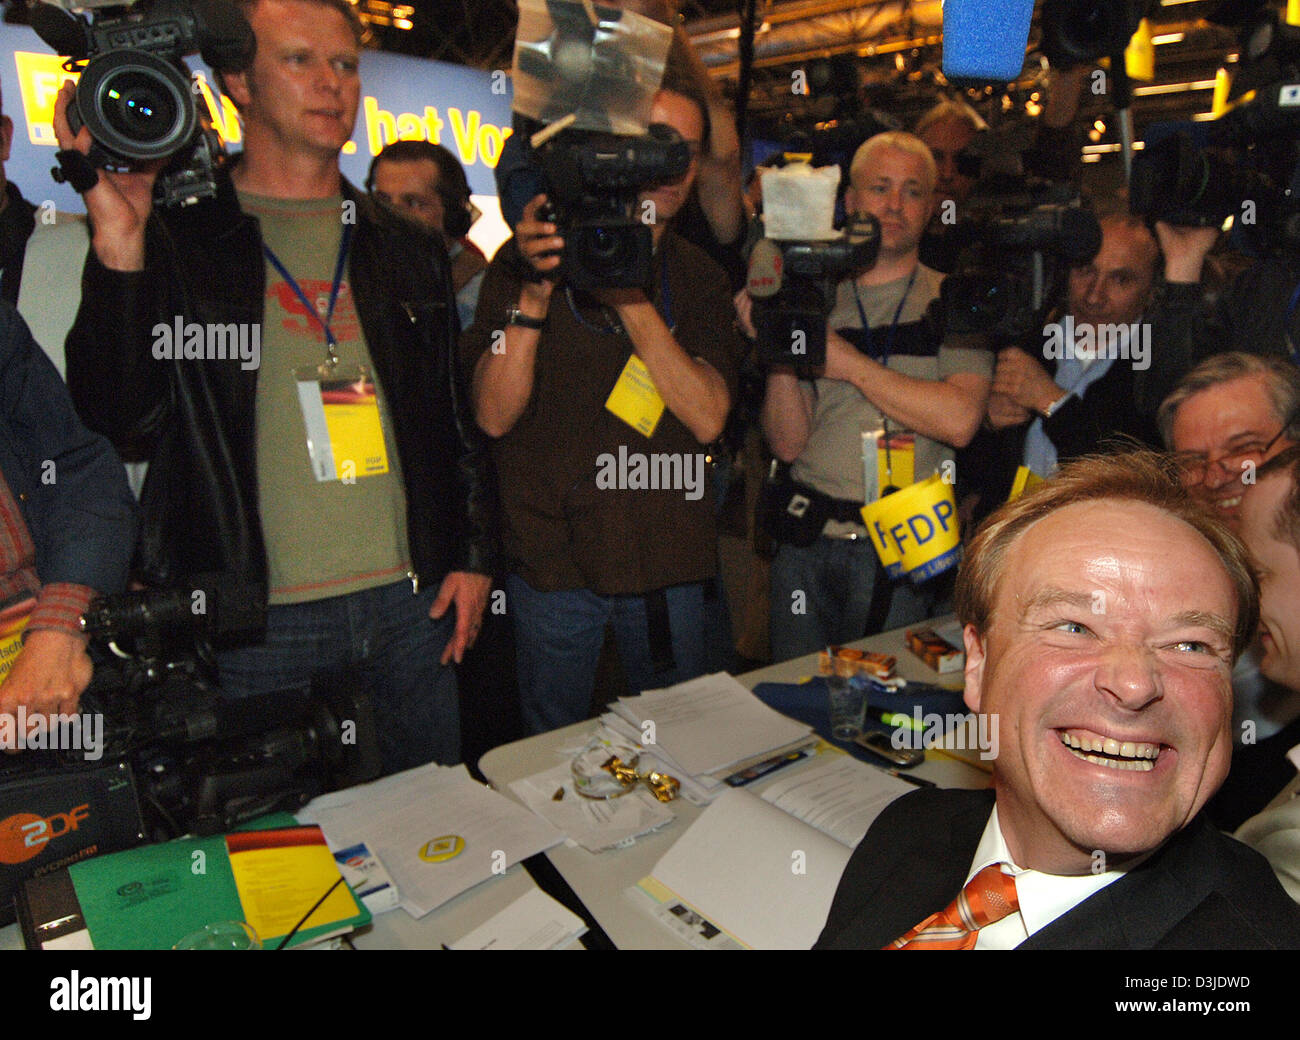 (Dpa) - Dirk Niebel (R, fondo) sorride e gioisce dopo i risultati delle elezioni durante il FDP Partito convenzione a Colonia, Germania, 05 maggio 2005. Niebel è stato eletto il FDP Partito della nuova secertary generale con il 92 percento dei voti. Foto Stock